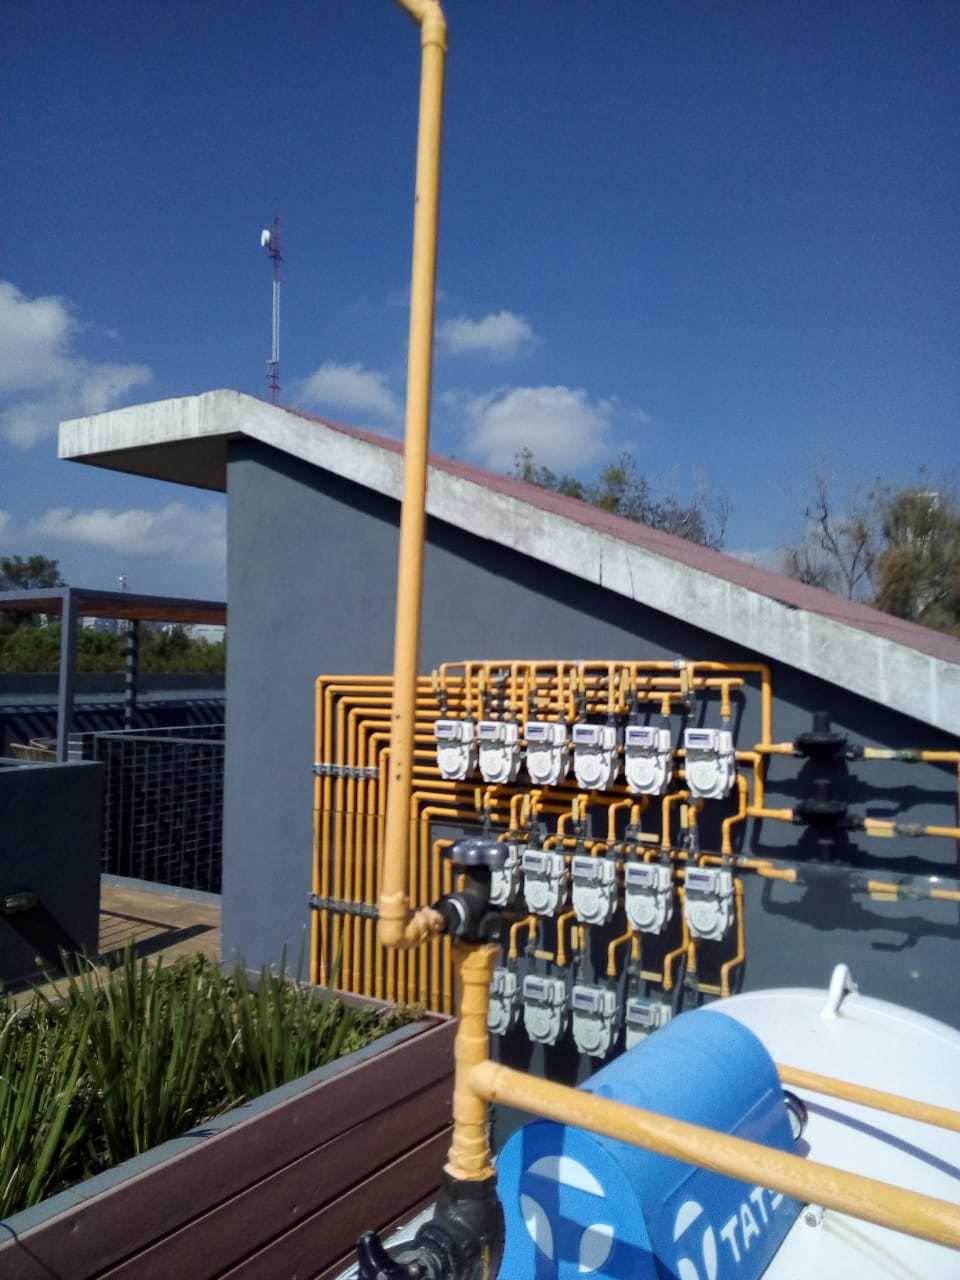 instalación de tanques estacionarios en mexico Instalación de tanques estacionarios en mexico &#8211; Gaslink WhatsApp Image 2020 01 13 at 11